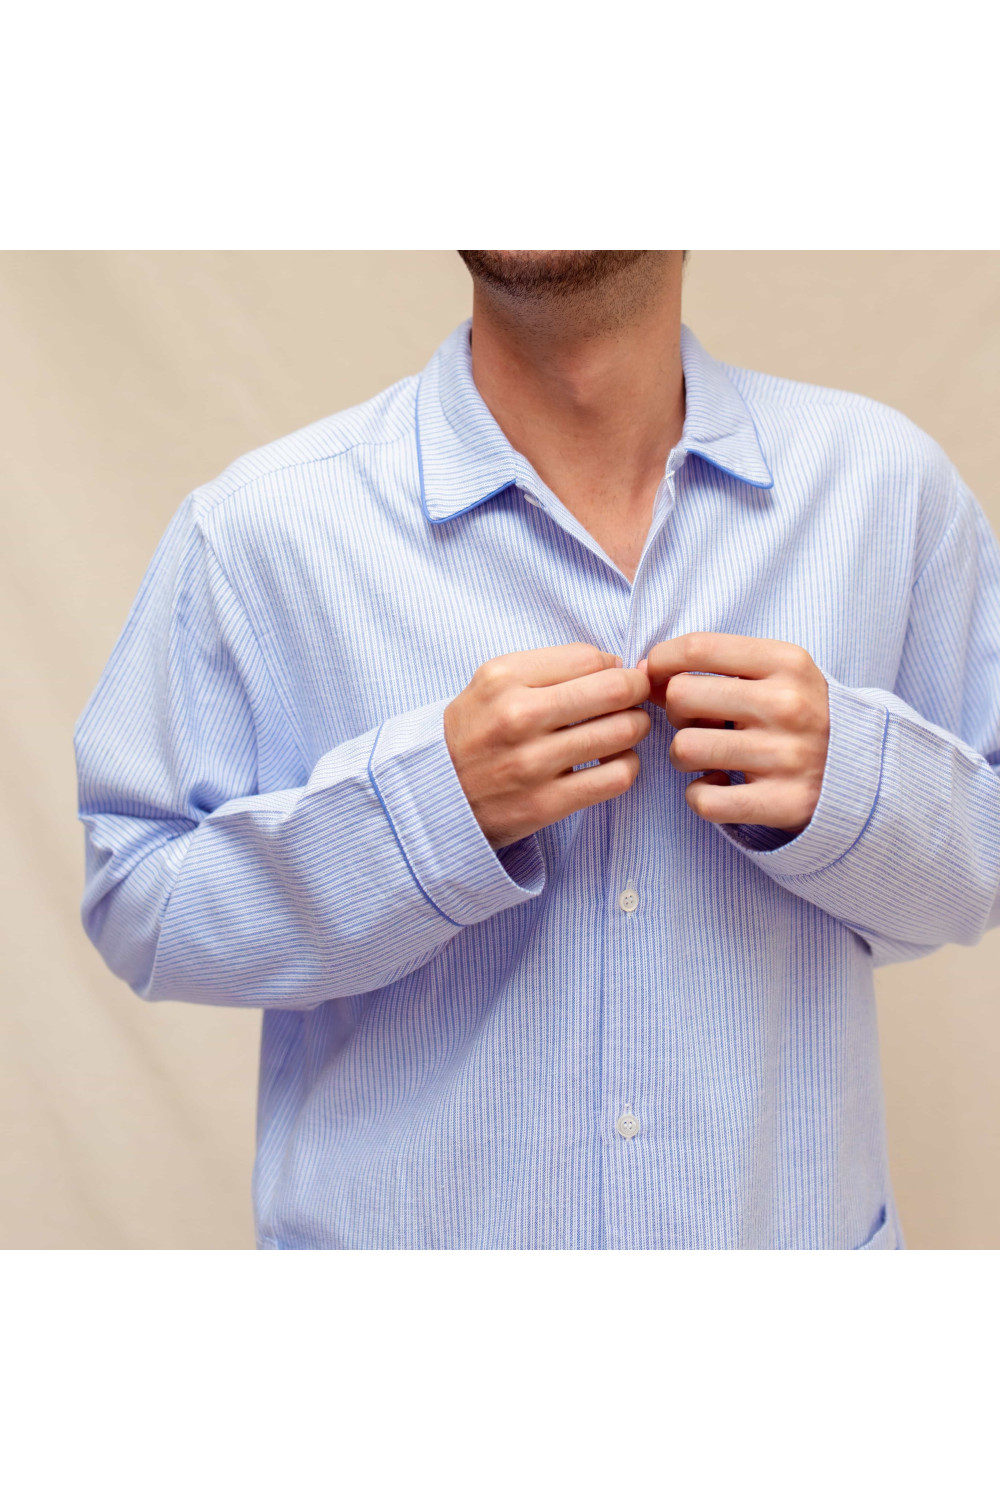 Pyjama 100% coton pour homme - Hiver - chaud, douillet , et